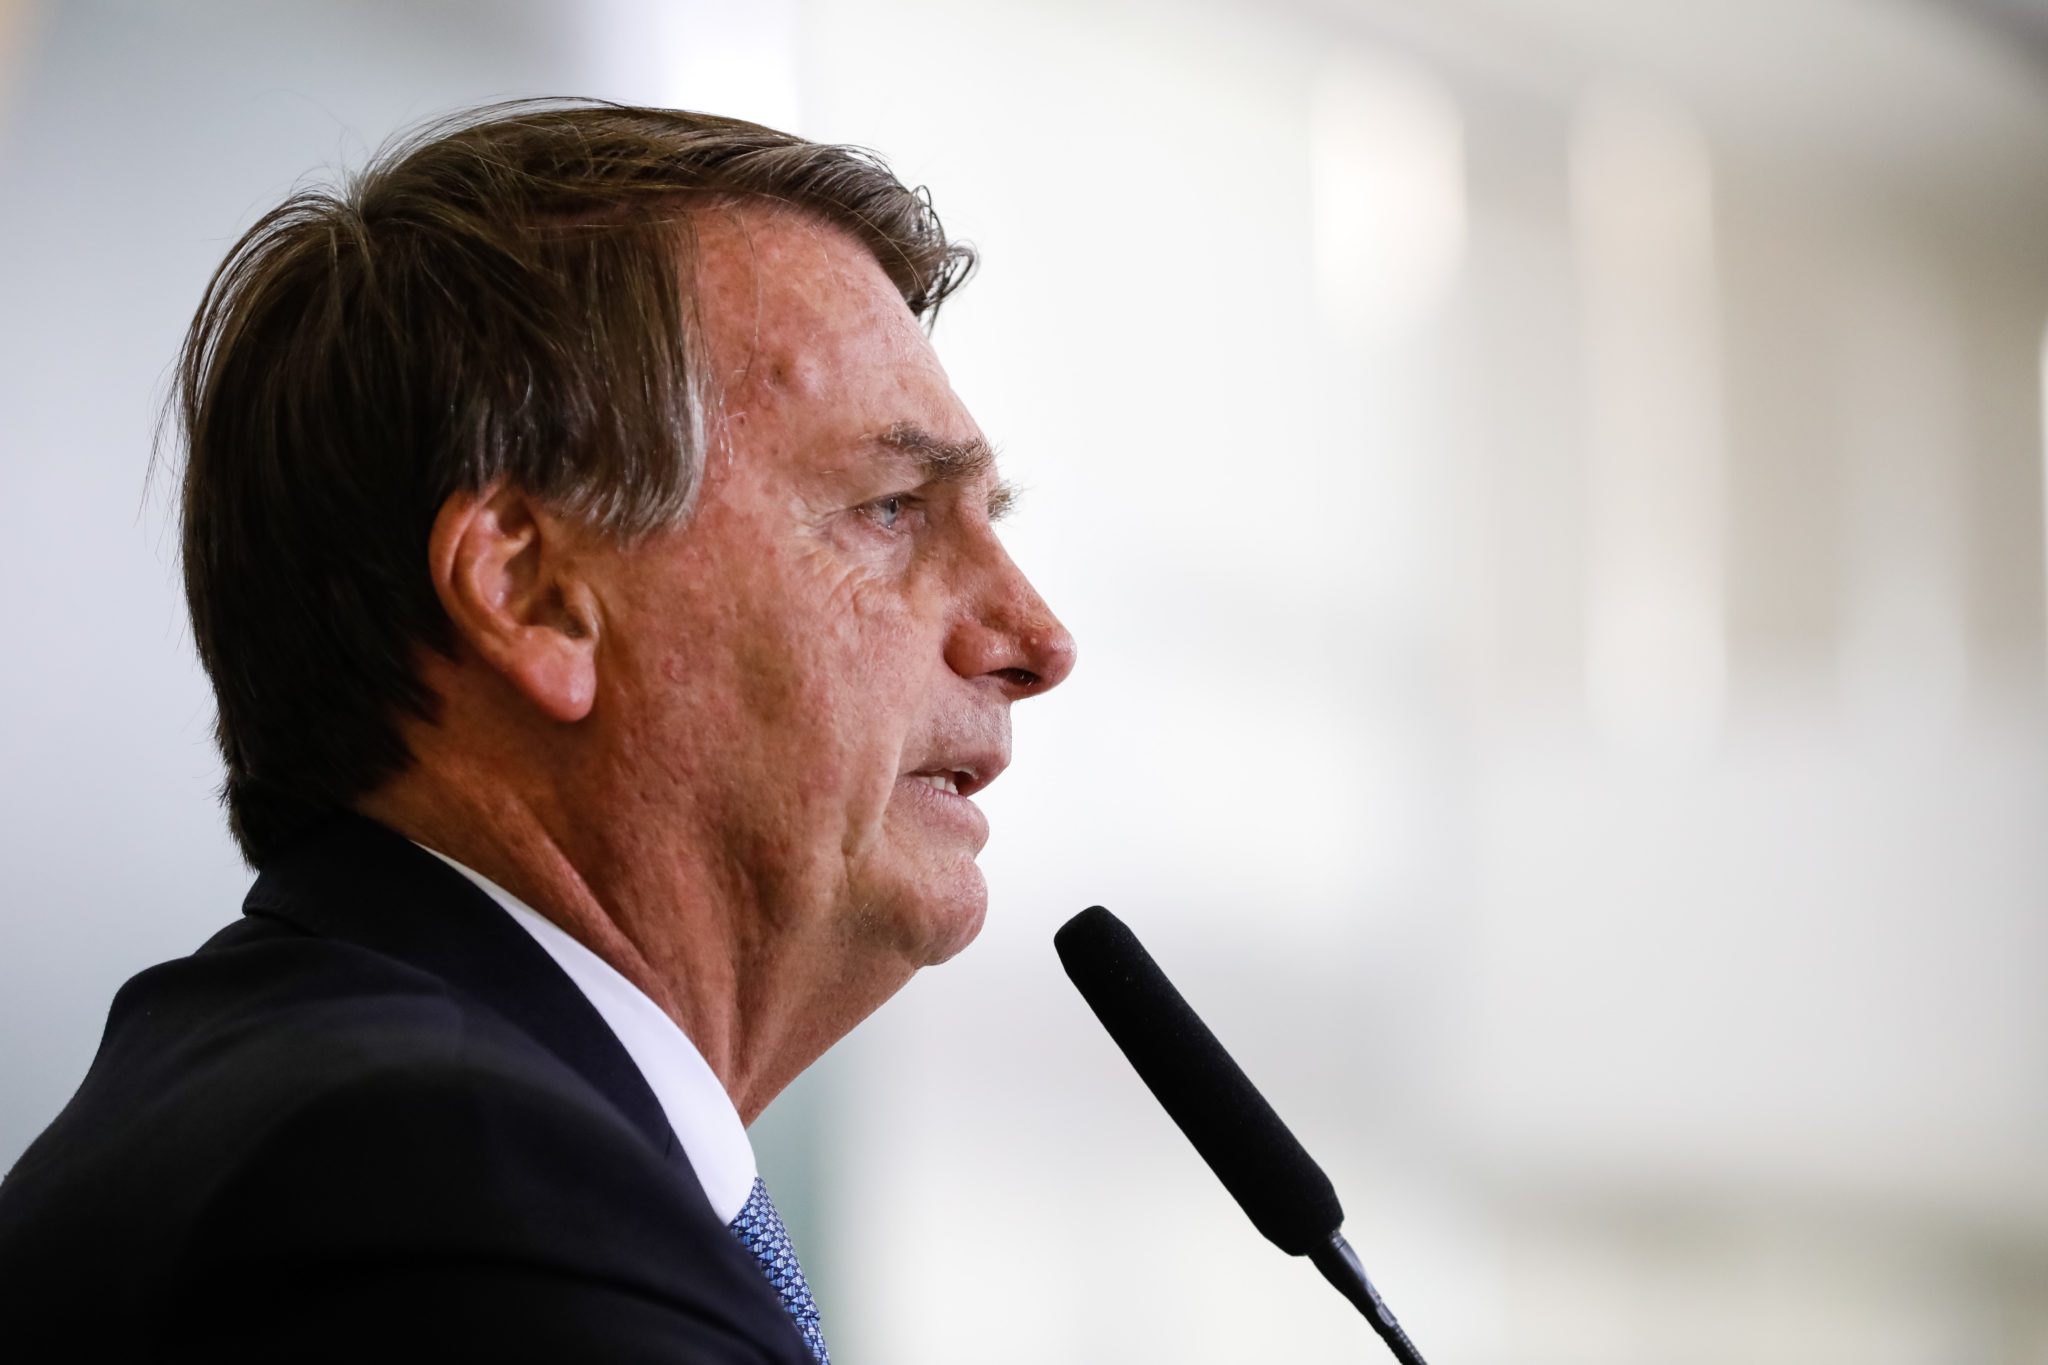 Elezioni Brasile, i magistrati di Lava Jato si schierano con Bolsonaro nonostante i sospetti di corruzione